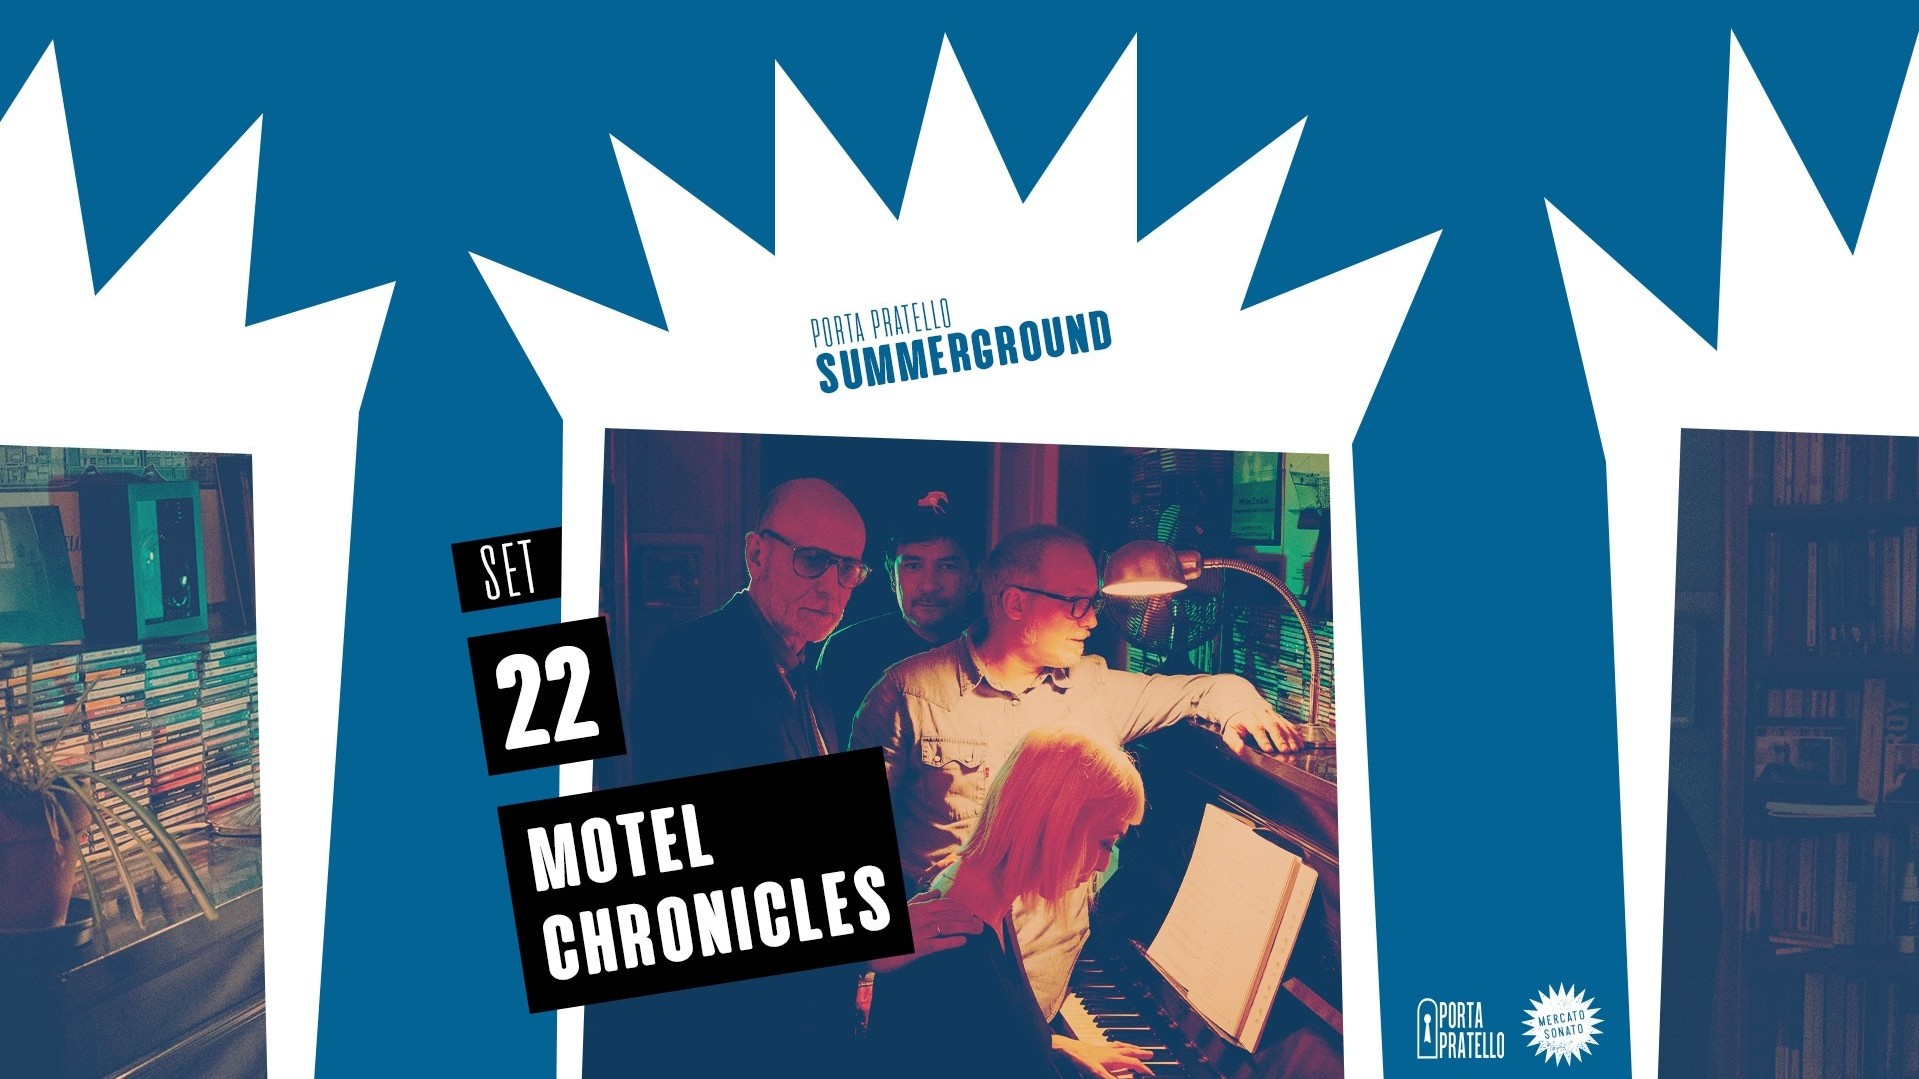 Motel Chronicles / Emidio Clementi + Corrado Nuccini